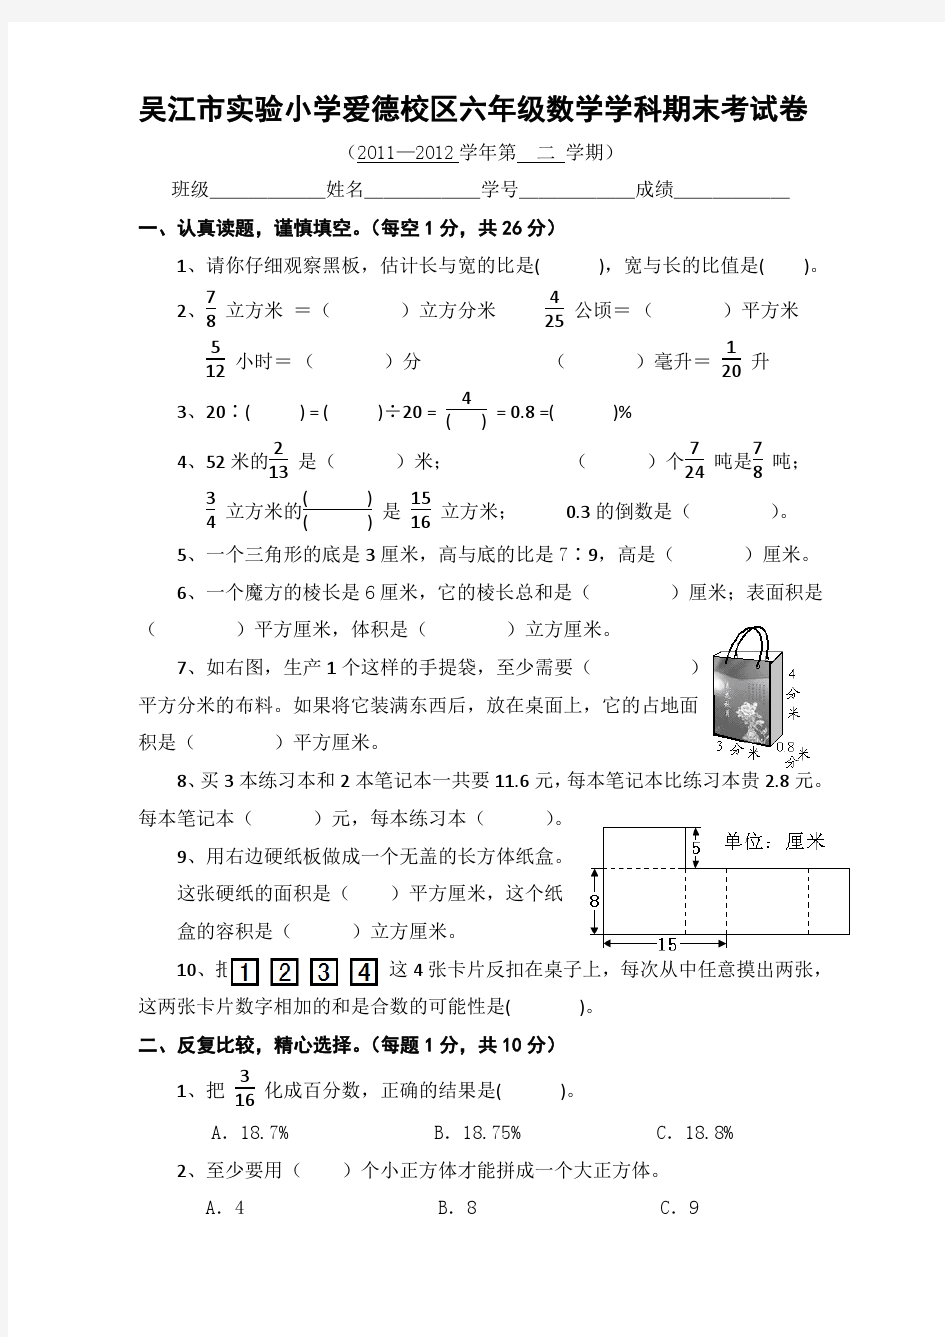 吴江市实验小学爱德校区六年级数学学科期末考试卷